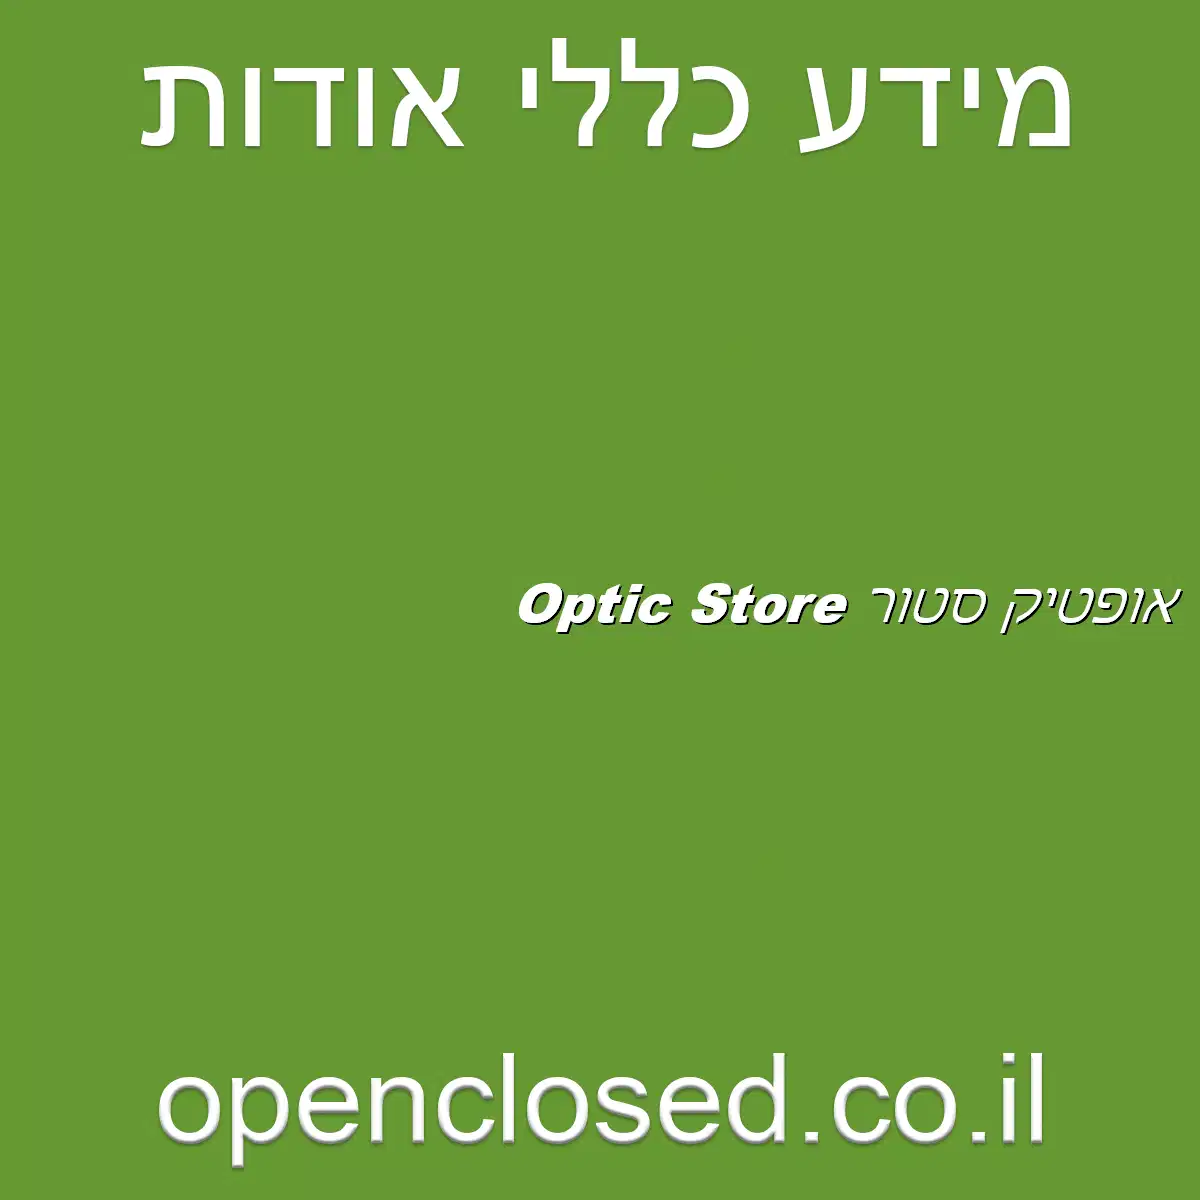 אופטיק סטור Optic Store